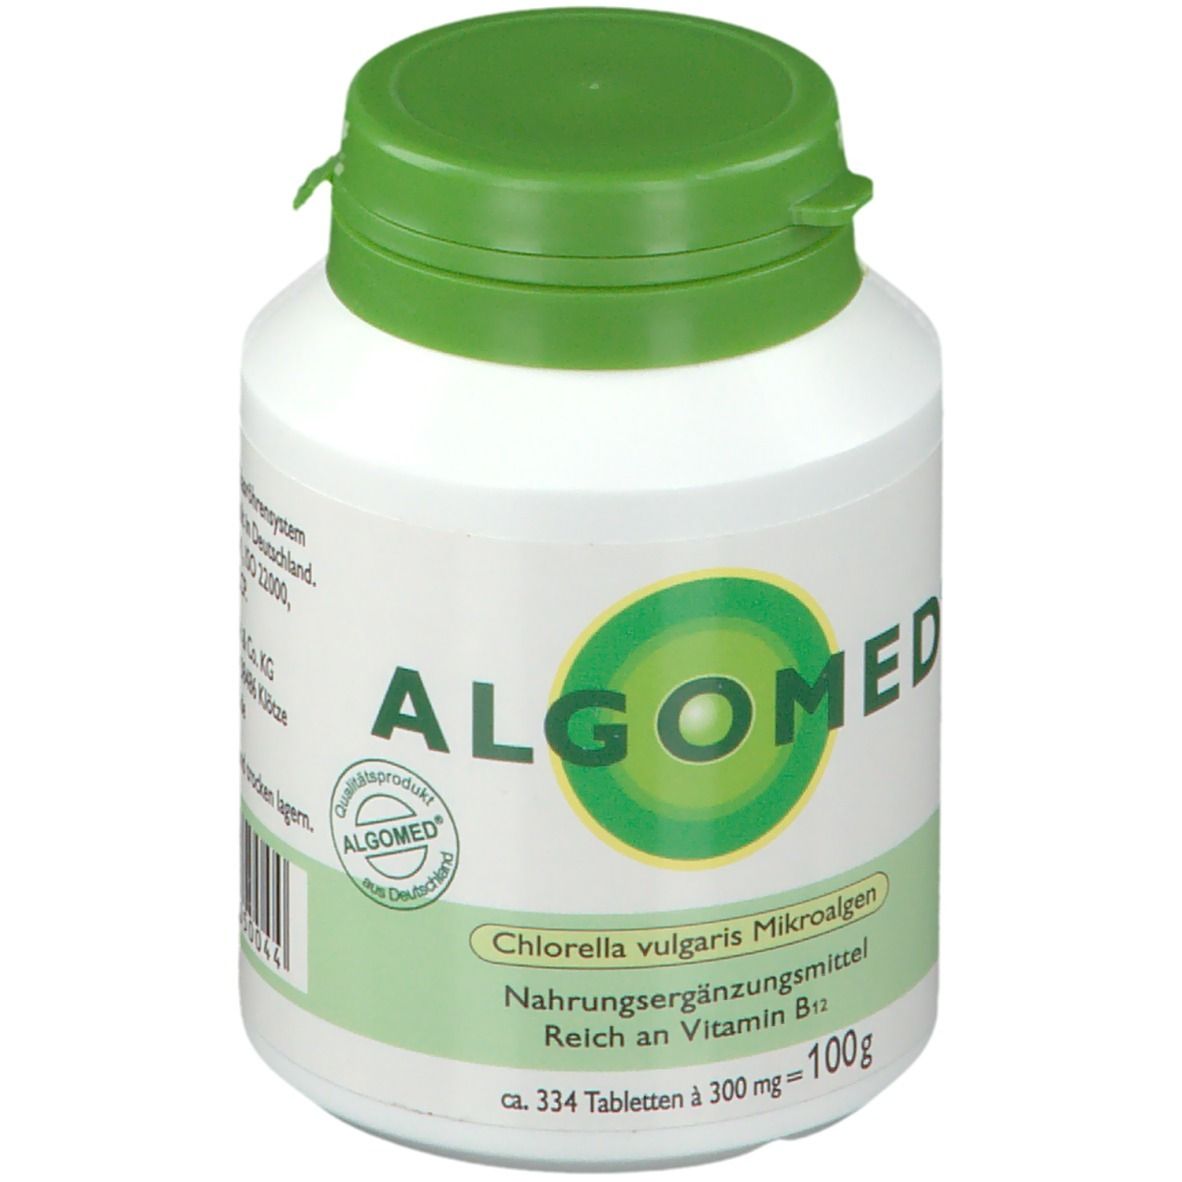 ALGOMED® Chlorella Tabletten